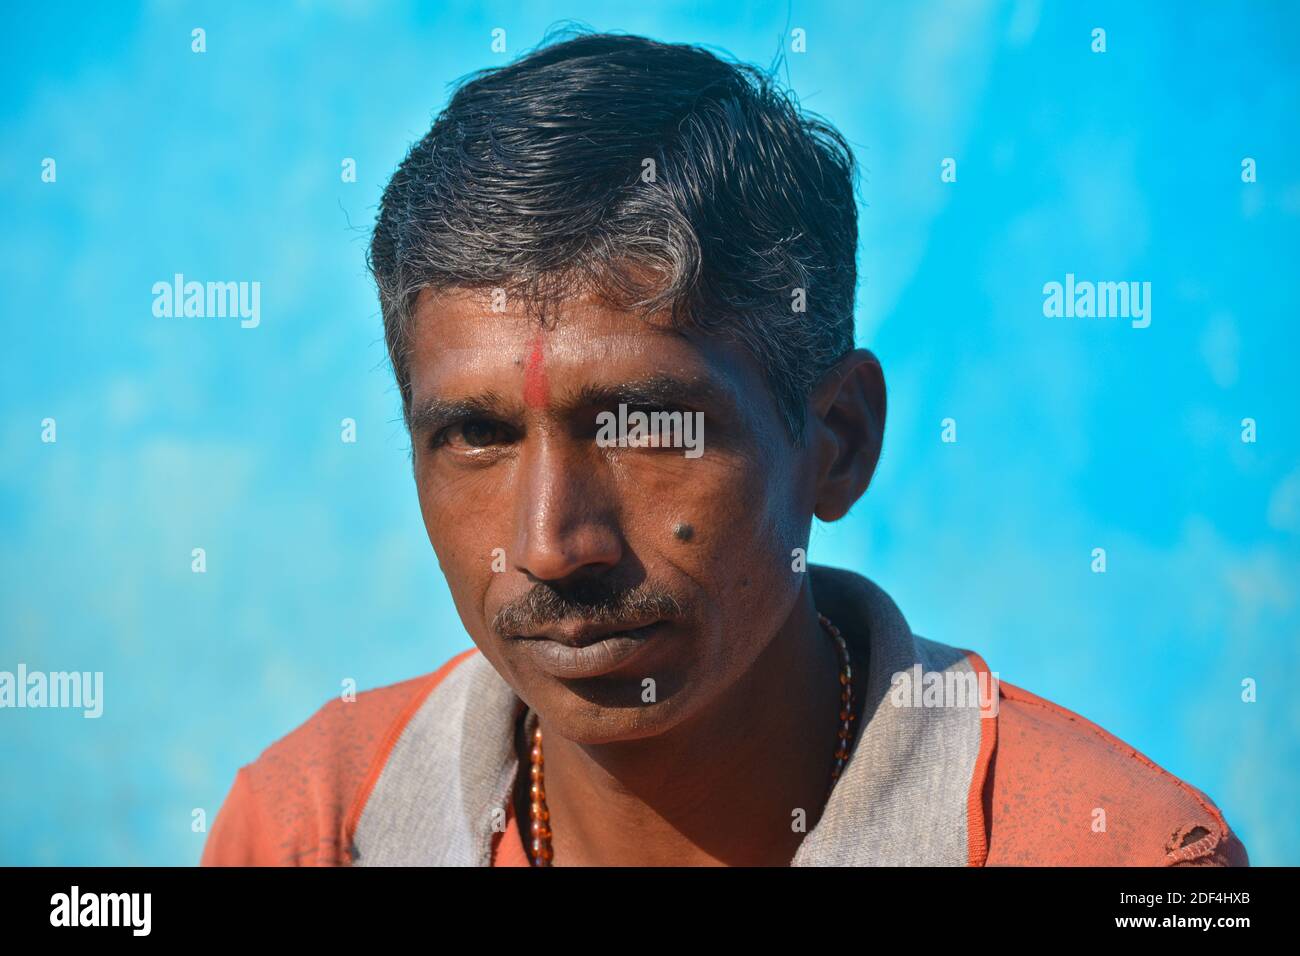 TIKAMGARH, MADHYA PRADESH, INDIEN - 24. NOVEMBER 2020: Porträt eines unbekannten Indianers in ihrem Dorf. Stockfoto